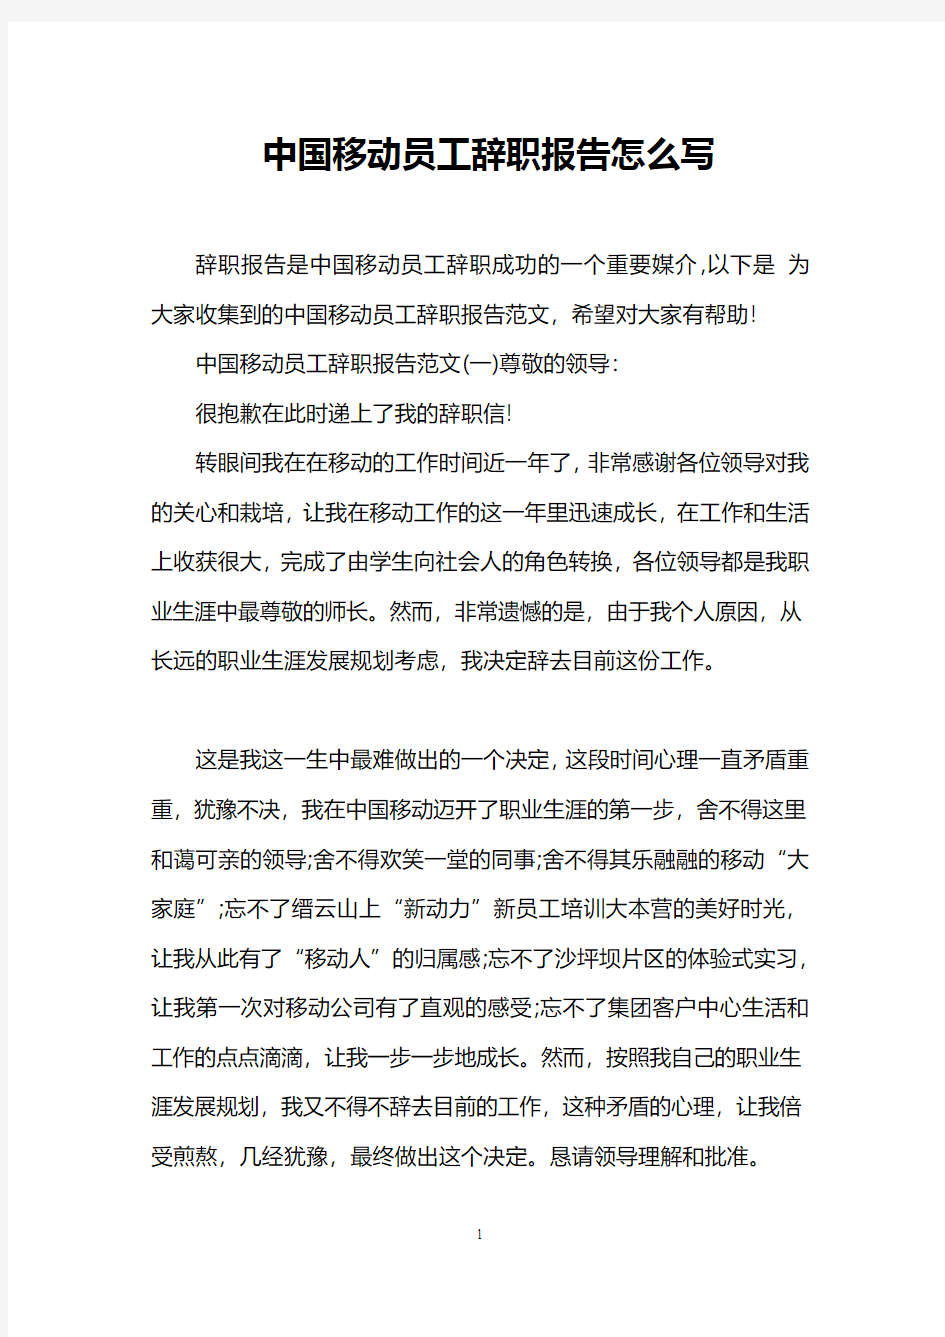 中国移动员工辞职报告怎么写